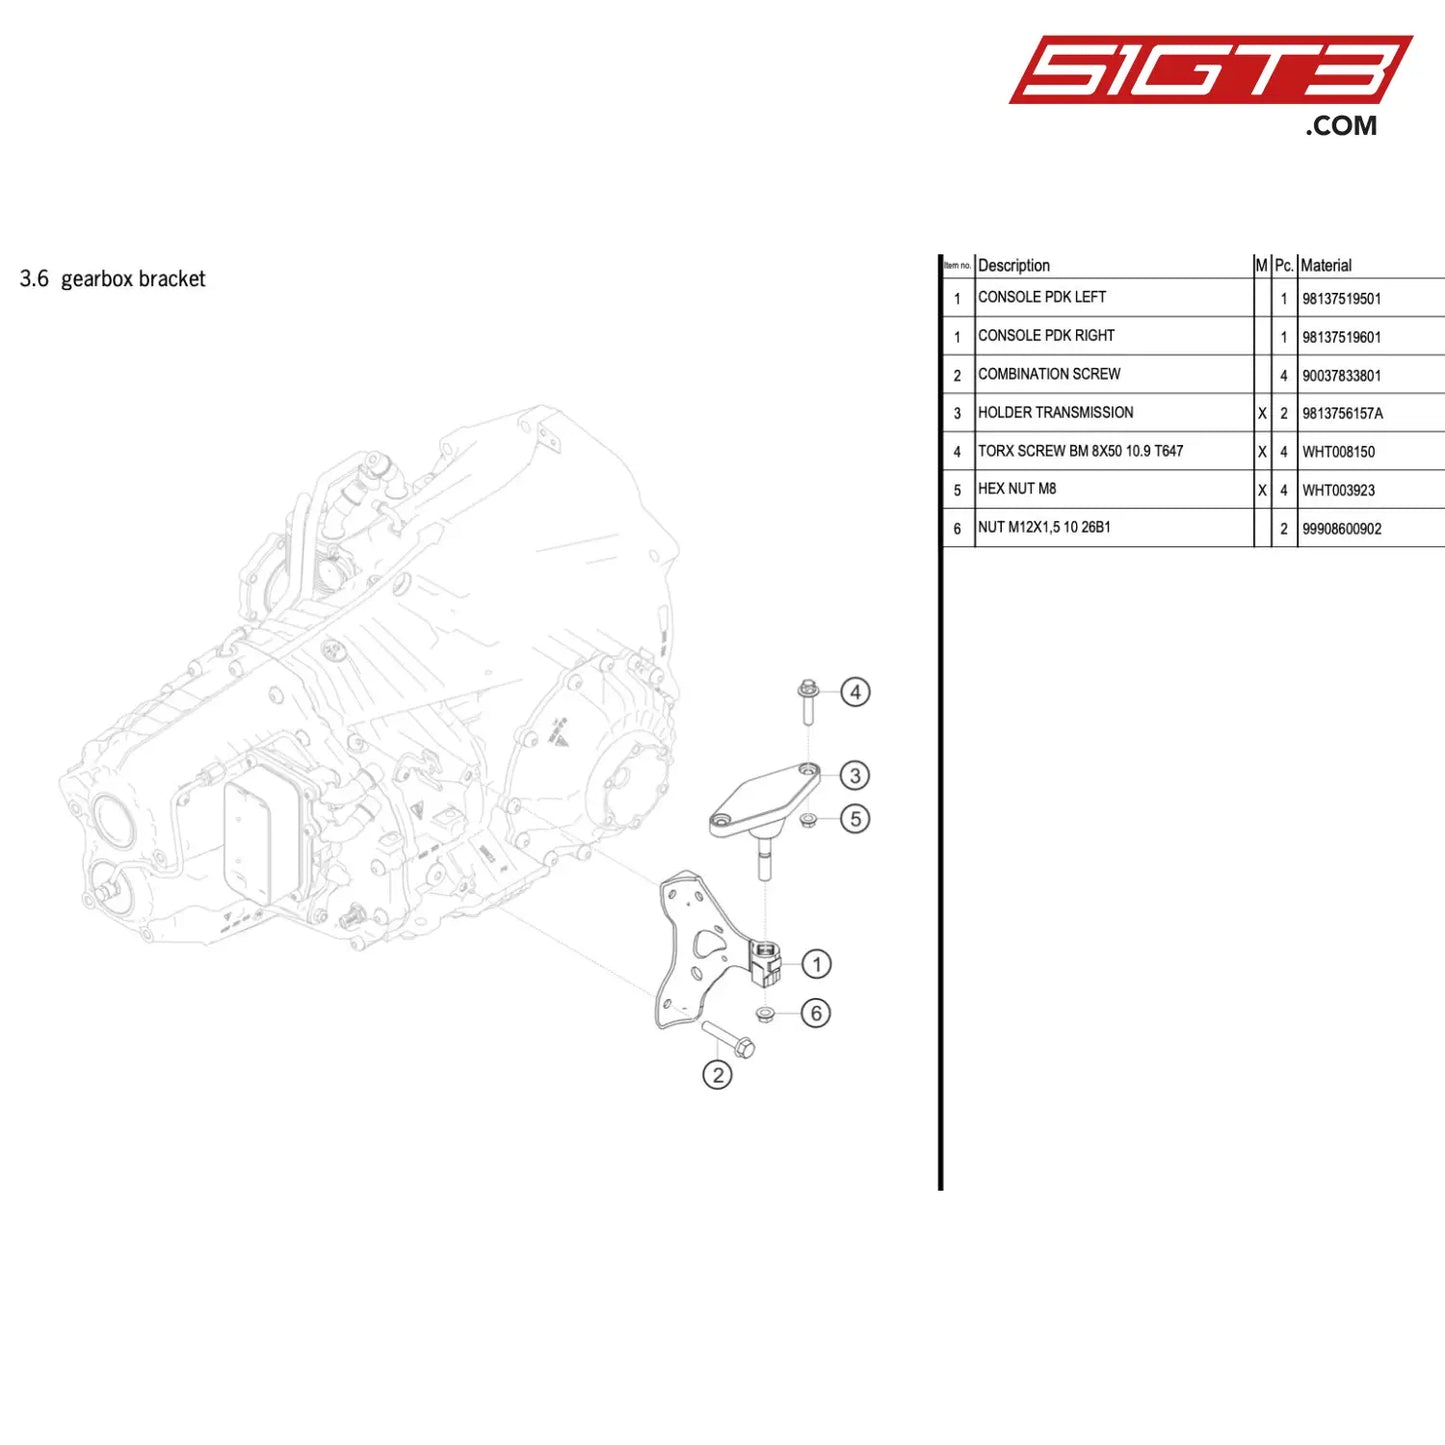 Console Pdk Right - 98137519601 [Porsche 718 Cayman Gt4 Rs Clubsport] Gearbox Bracket